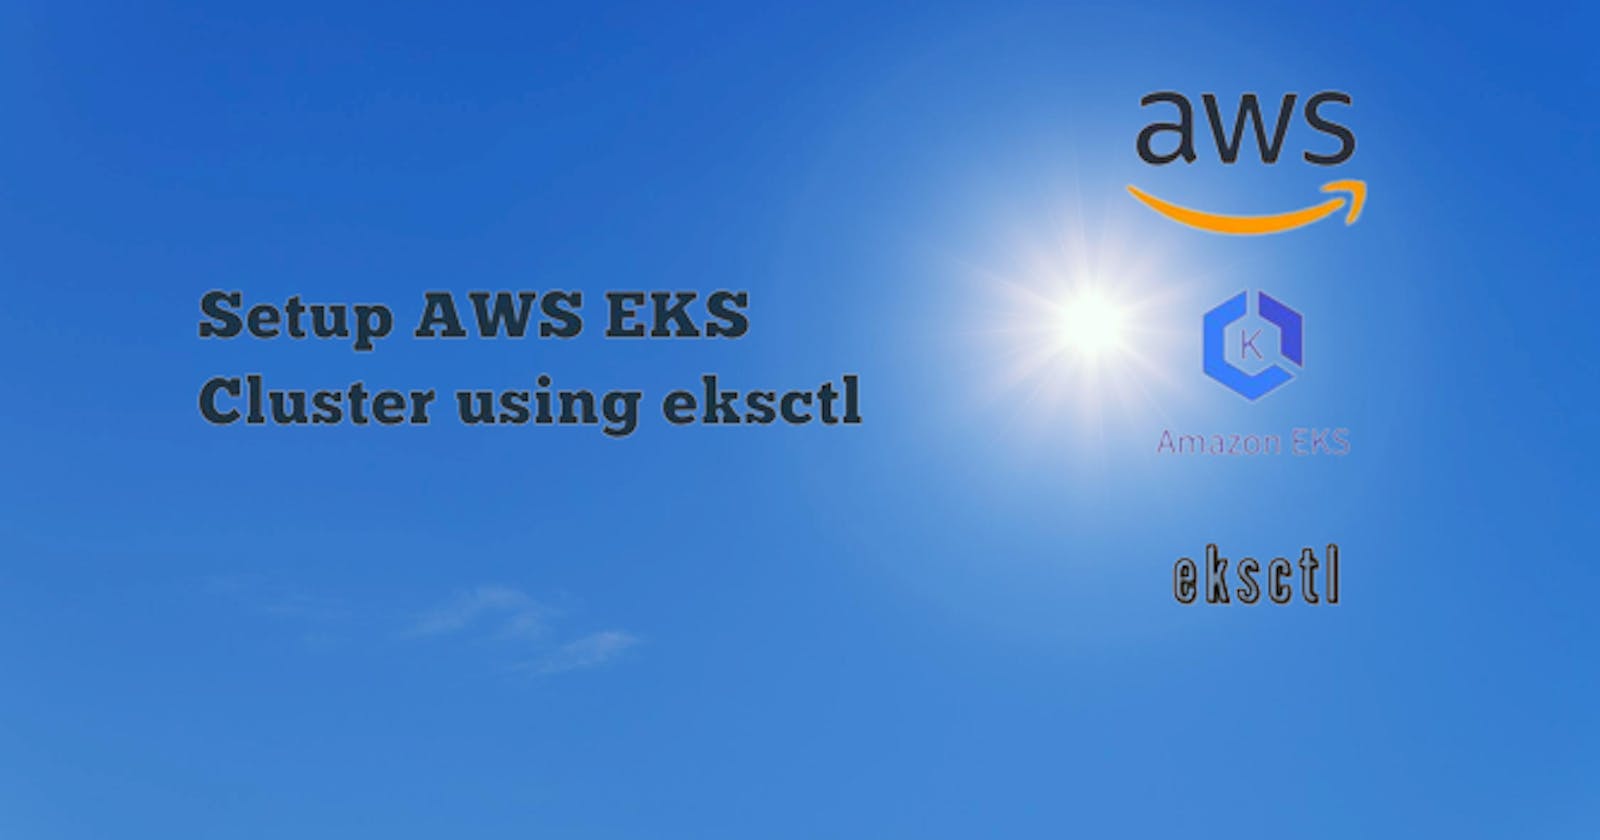 How to create EKS cluster in AWS Using eksctl